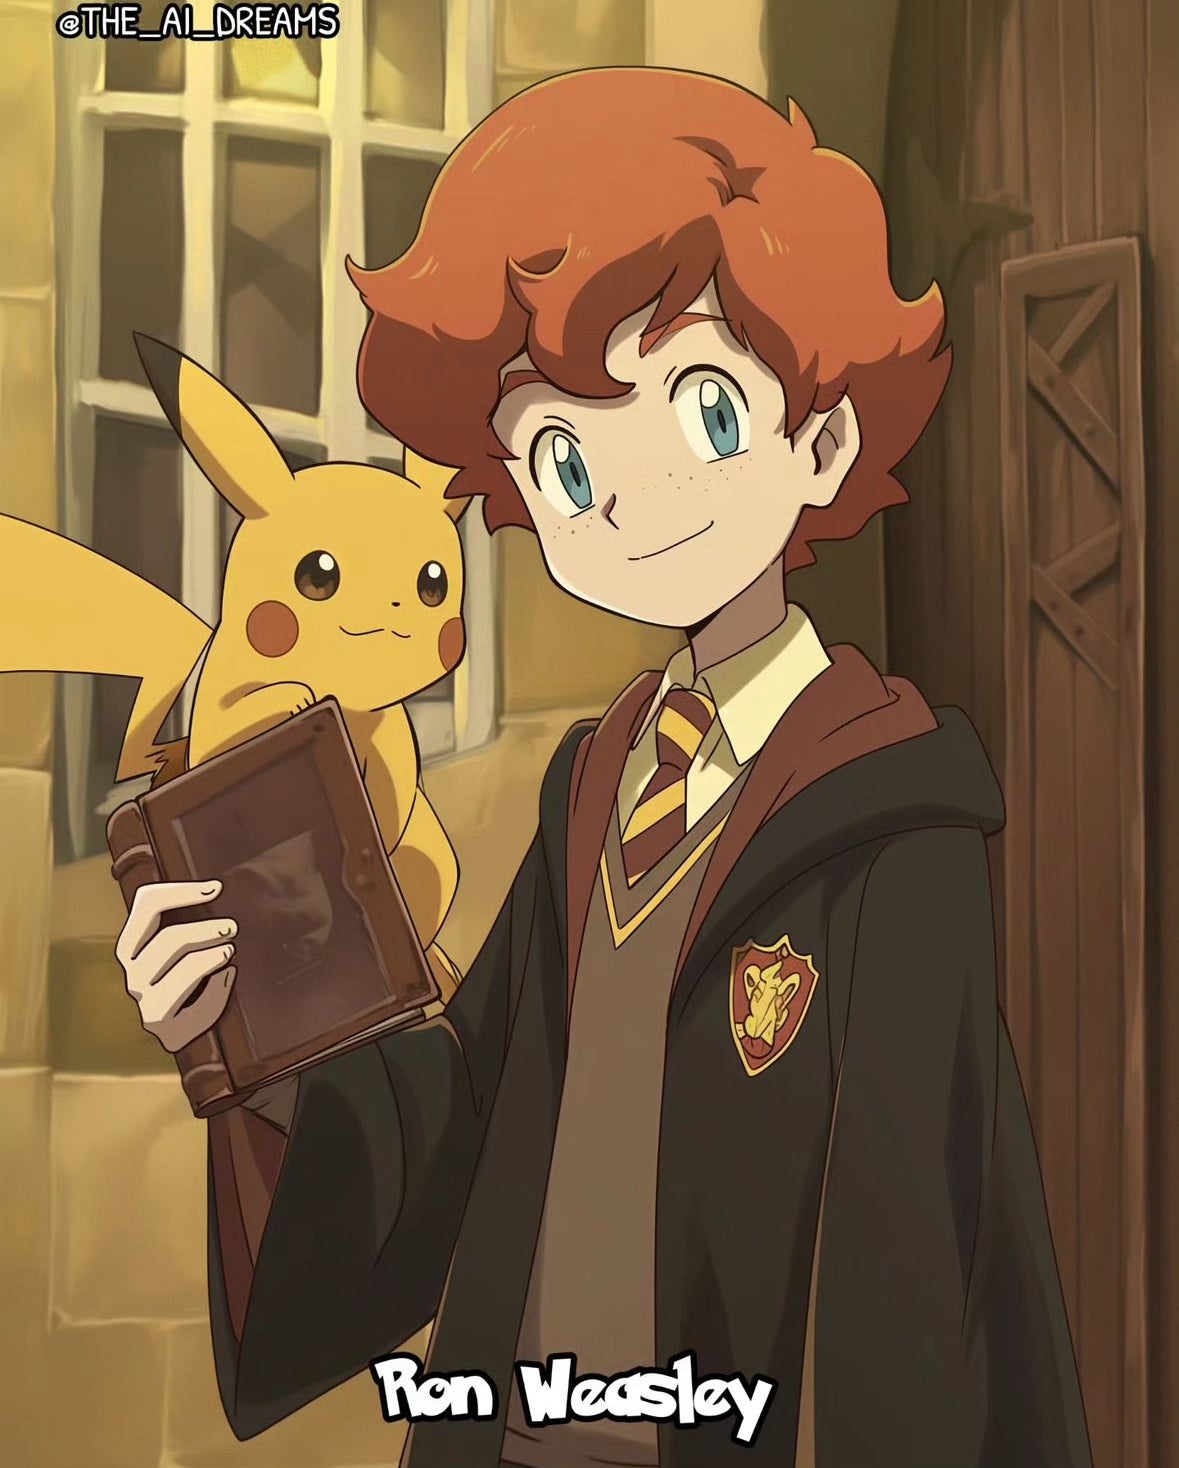 แฮร์รี่ พอตเตอร์ Harry potter โปเกม่อน Pokémon aiart